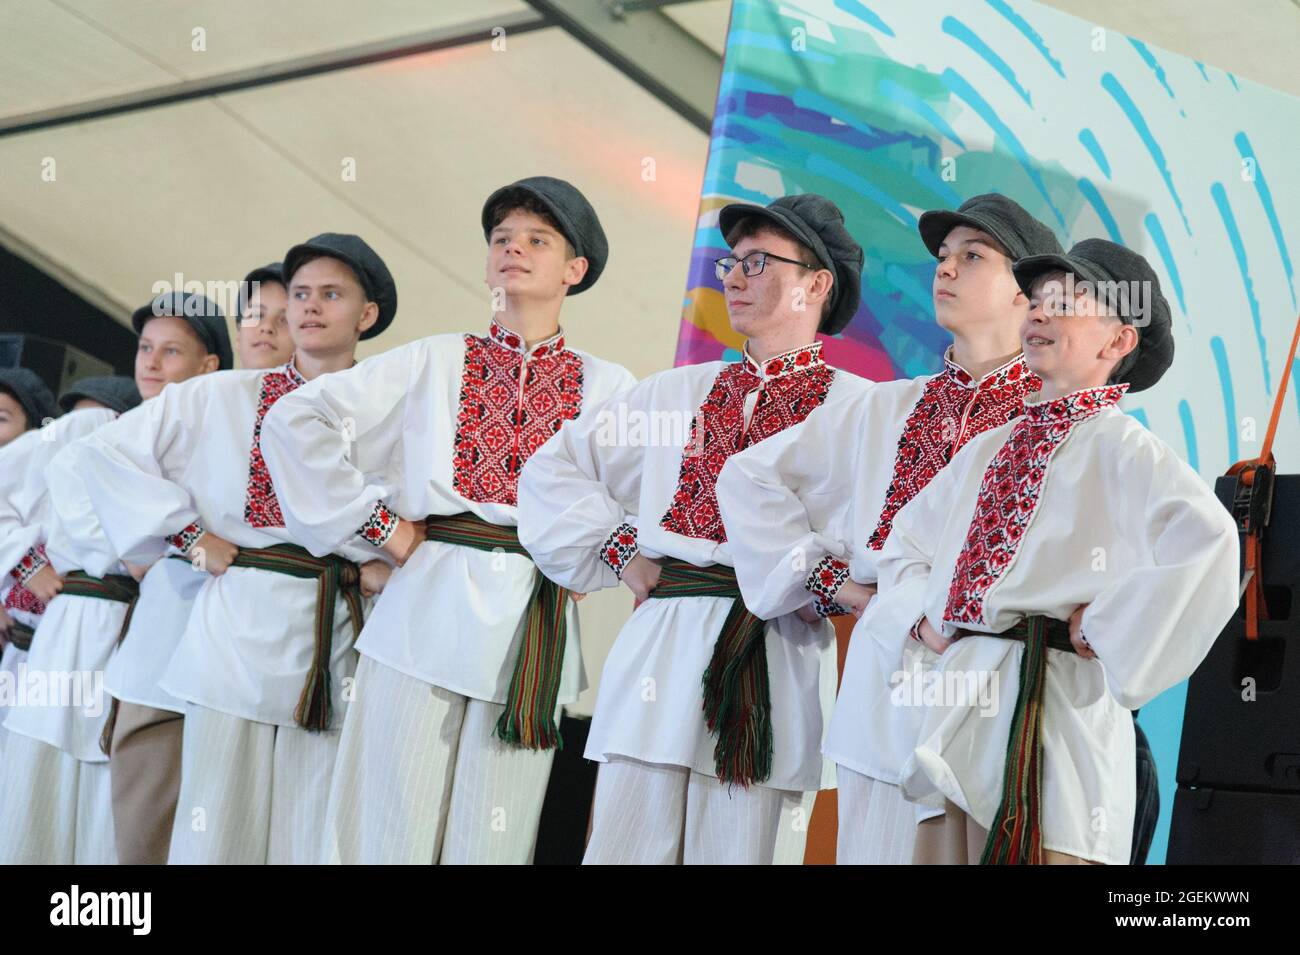 Los hombres de ropa tradicional actúan durante el Festival Internacional de  Folklore Etnovyr 2021 en el oeste de Ucrania. Grupos folklóricos de  diferentes partes del mundo presentan la cultura de sus países